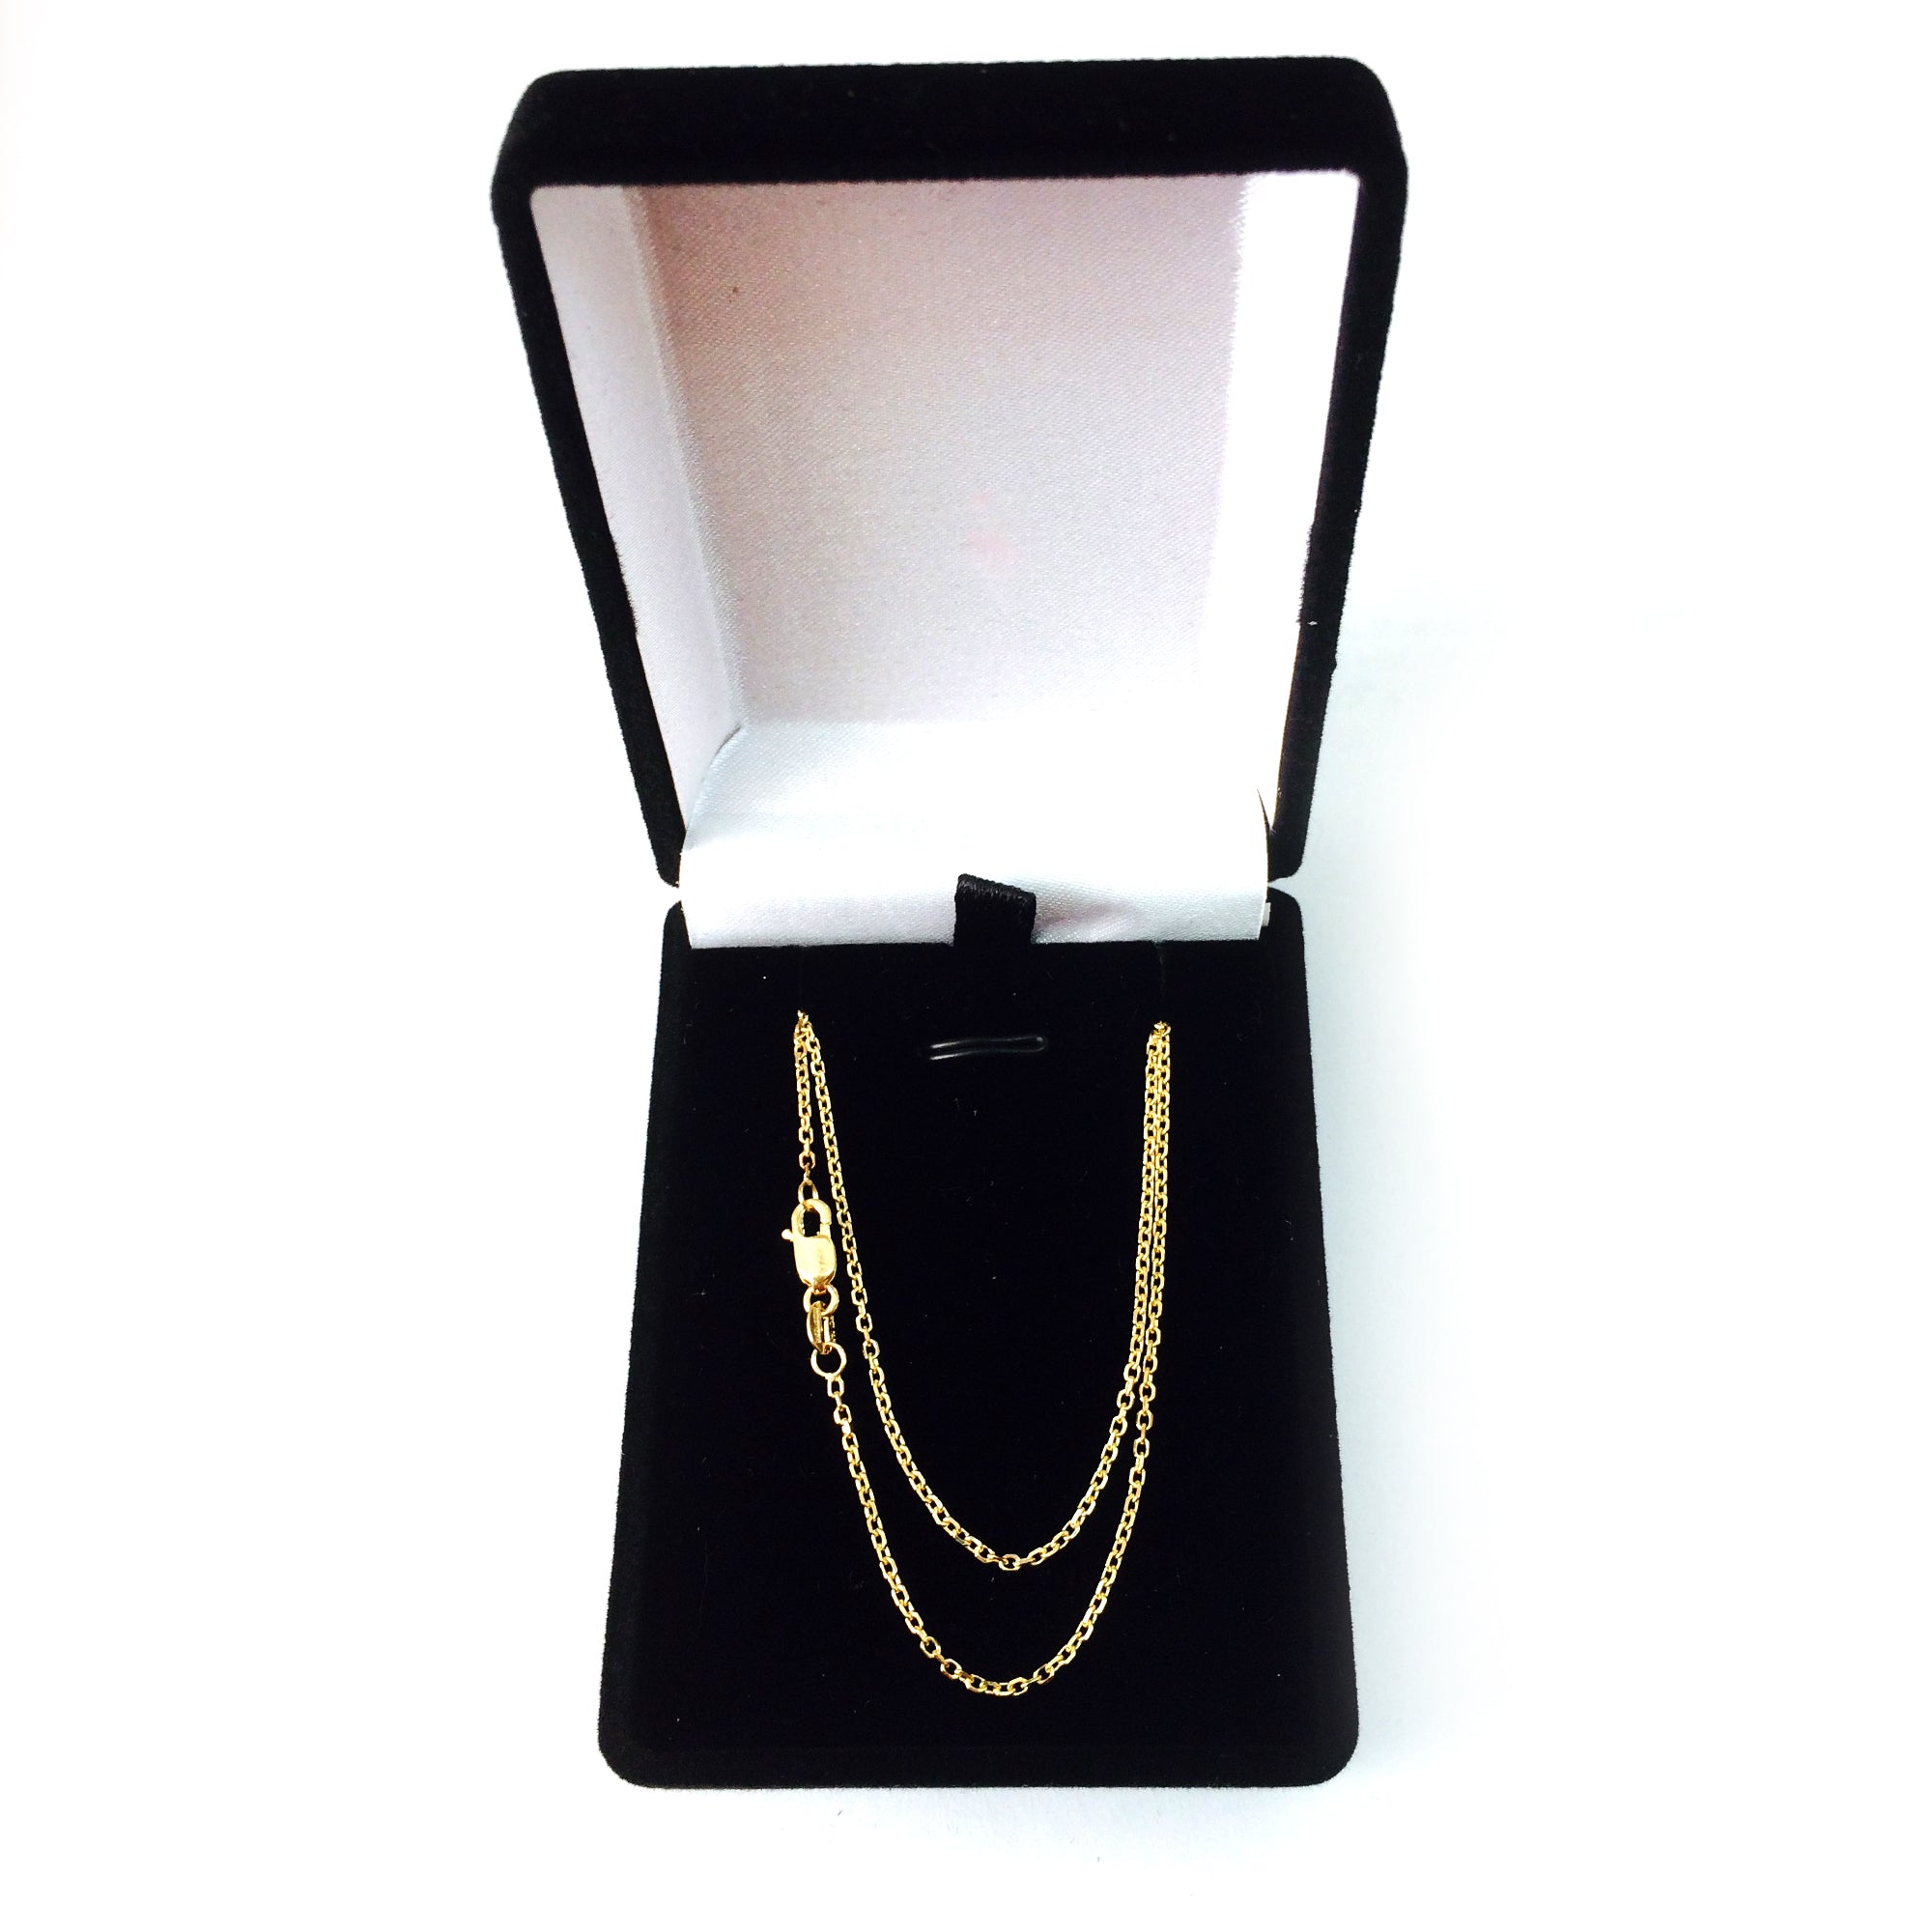 Collar de cadena con eslabones tipo cable de oro amarillo de 14 k, joyería fina de diseño de 1,4 mm para hombres y mujeres